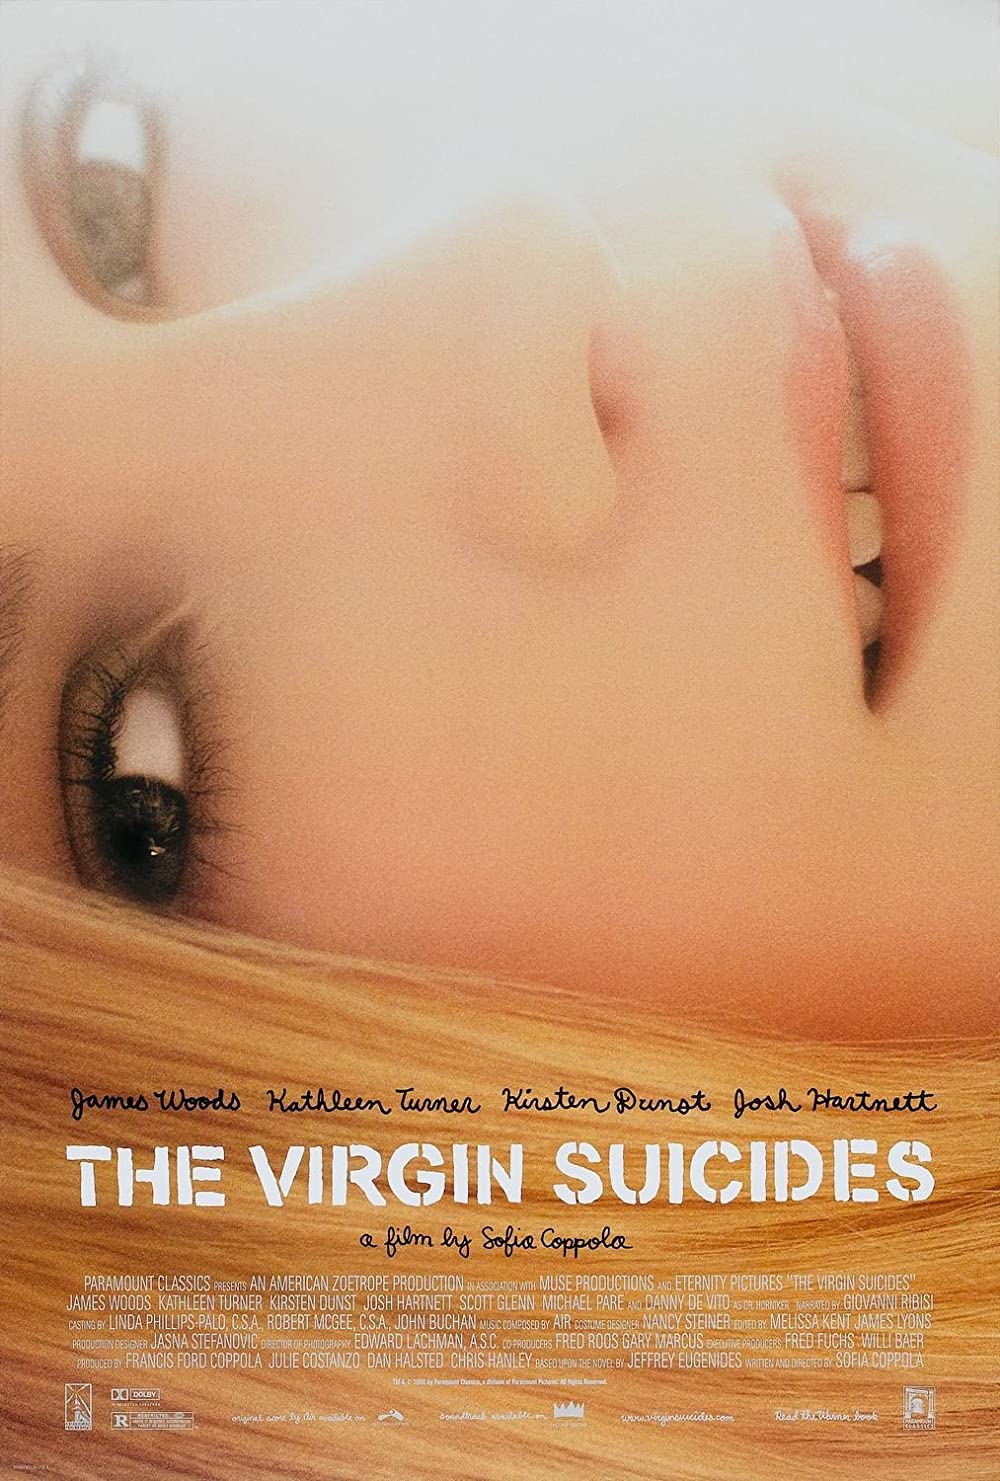 Filmbeschreibung zu The Virgin Suicides (OV)